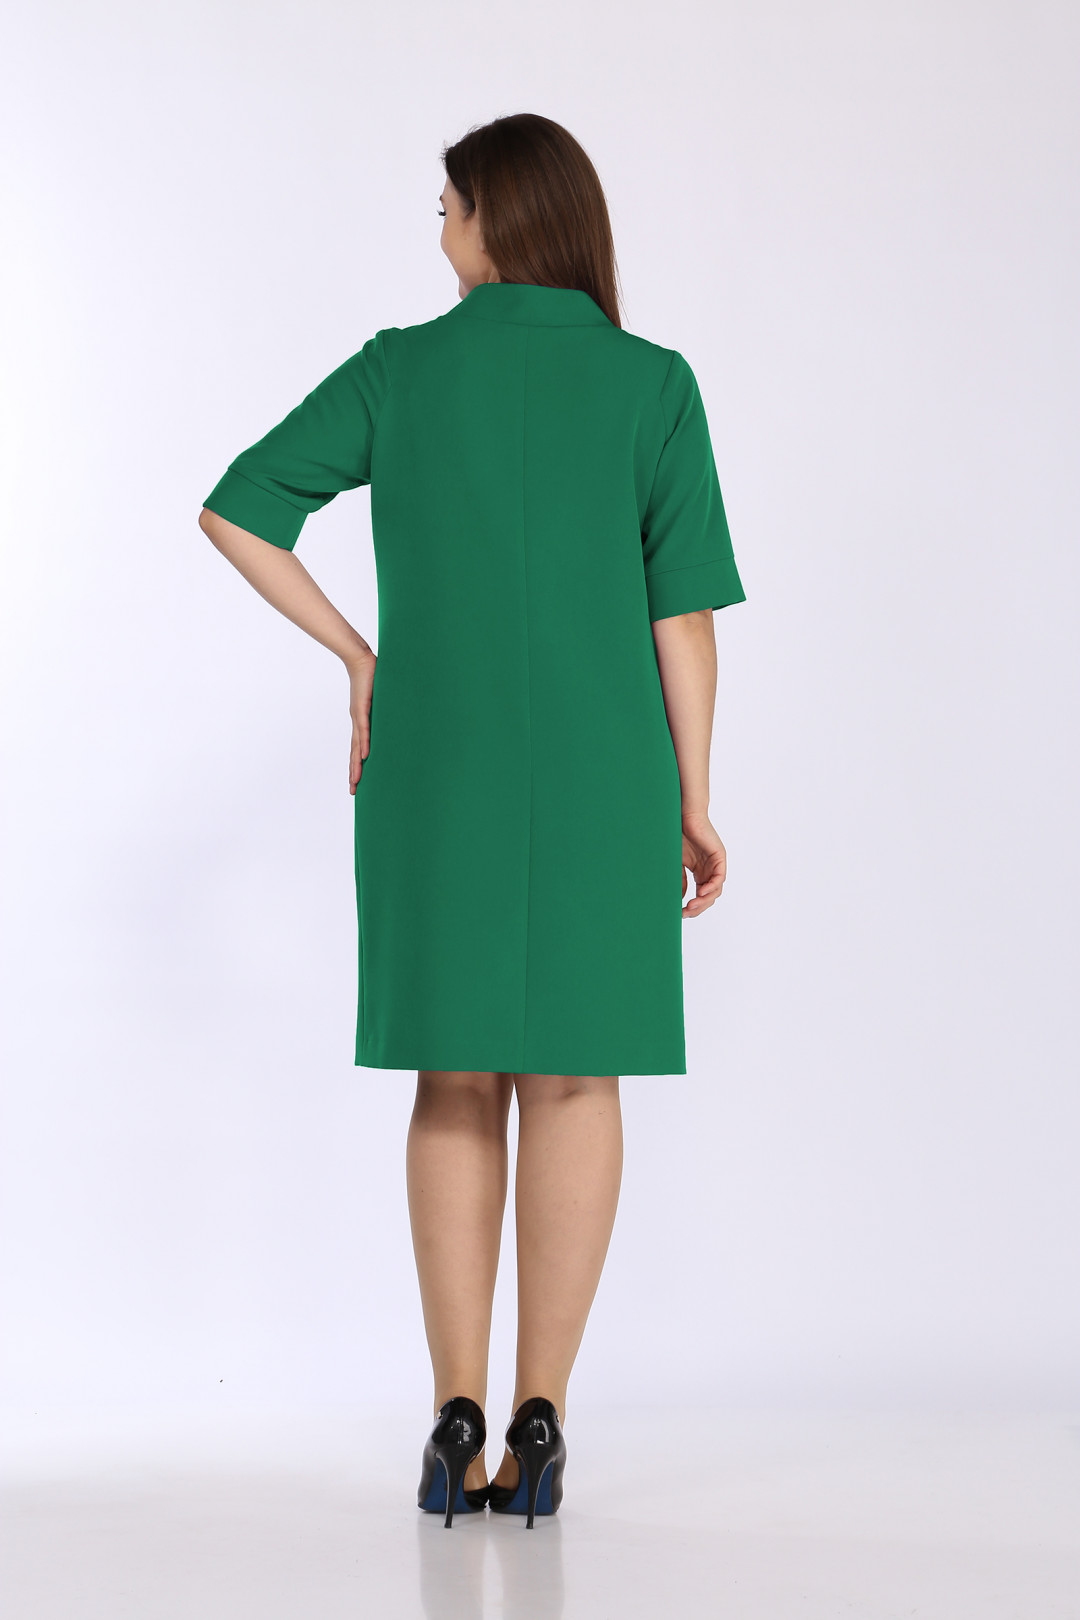 Платье LadyStyleClassic 2536/1 зеленый